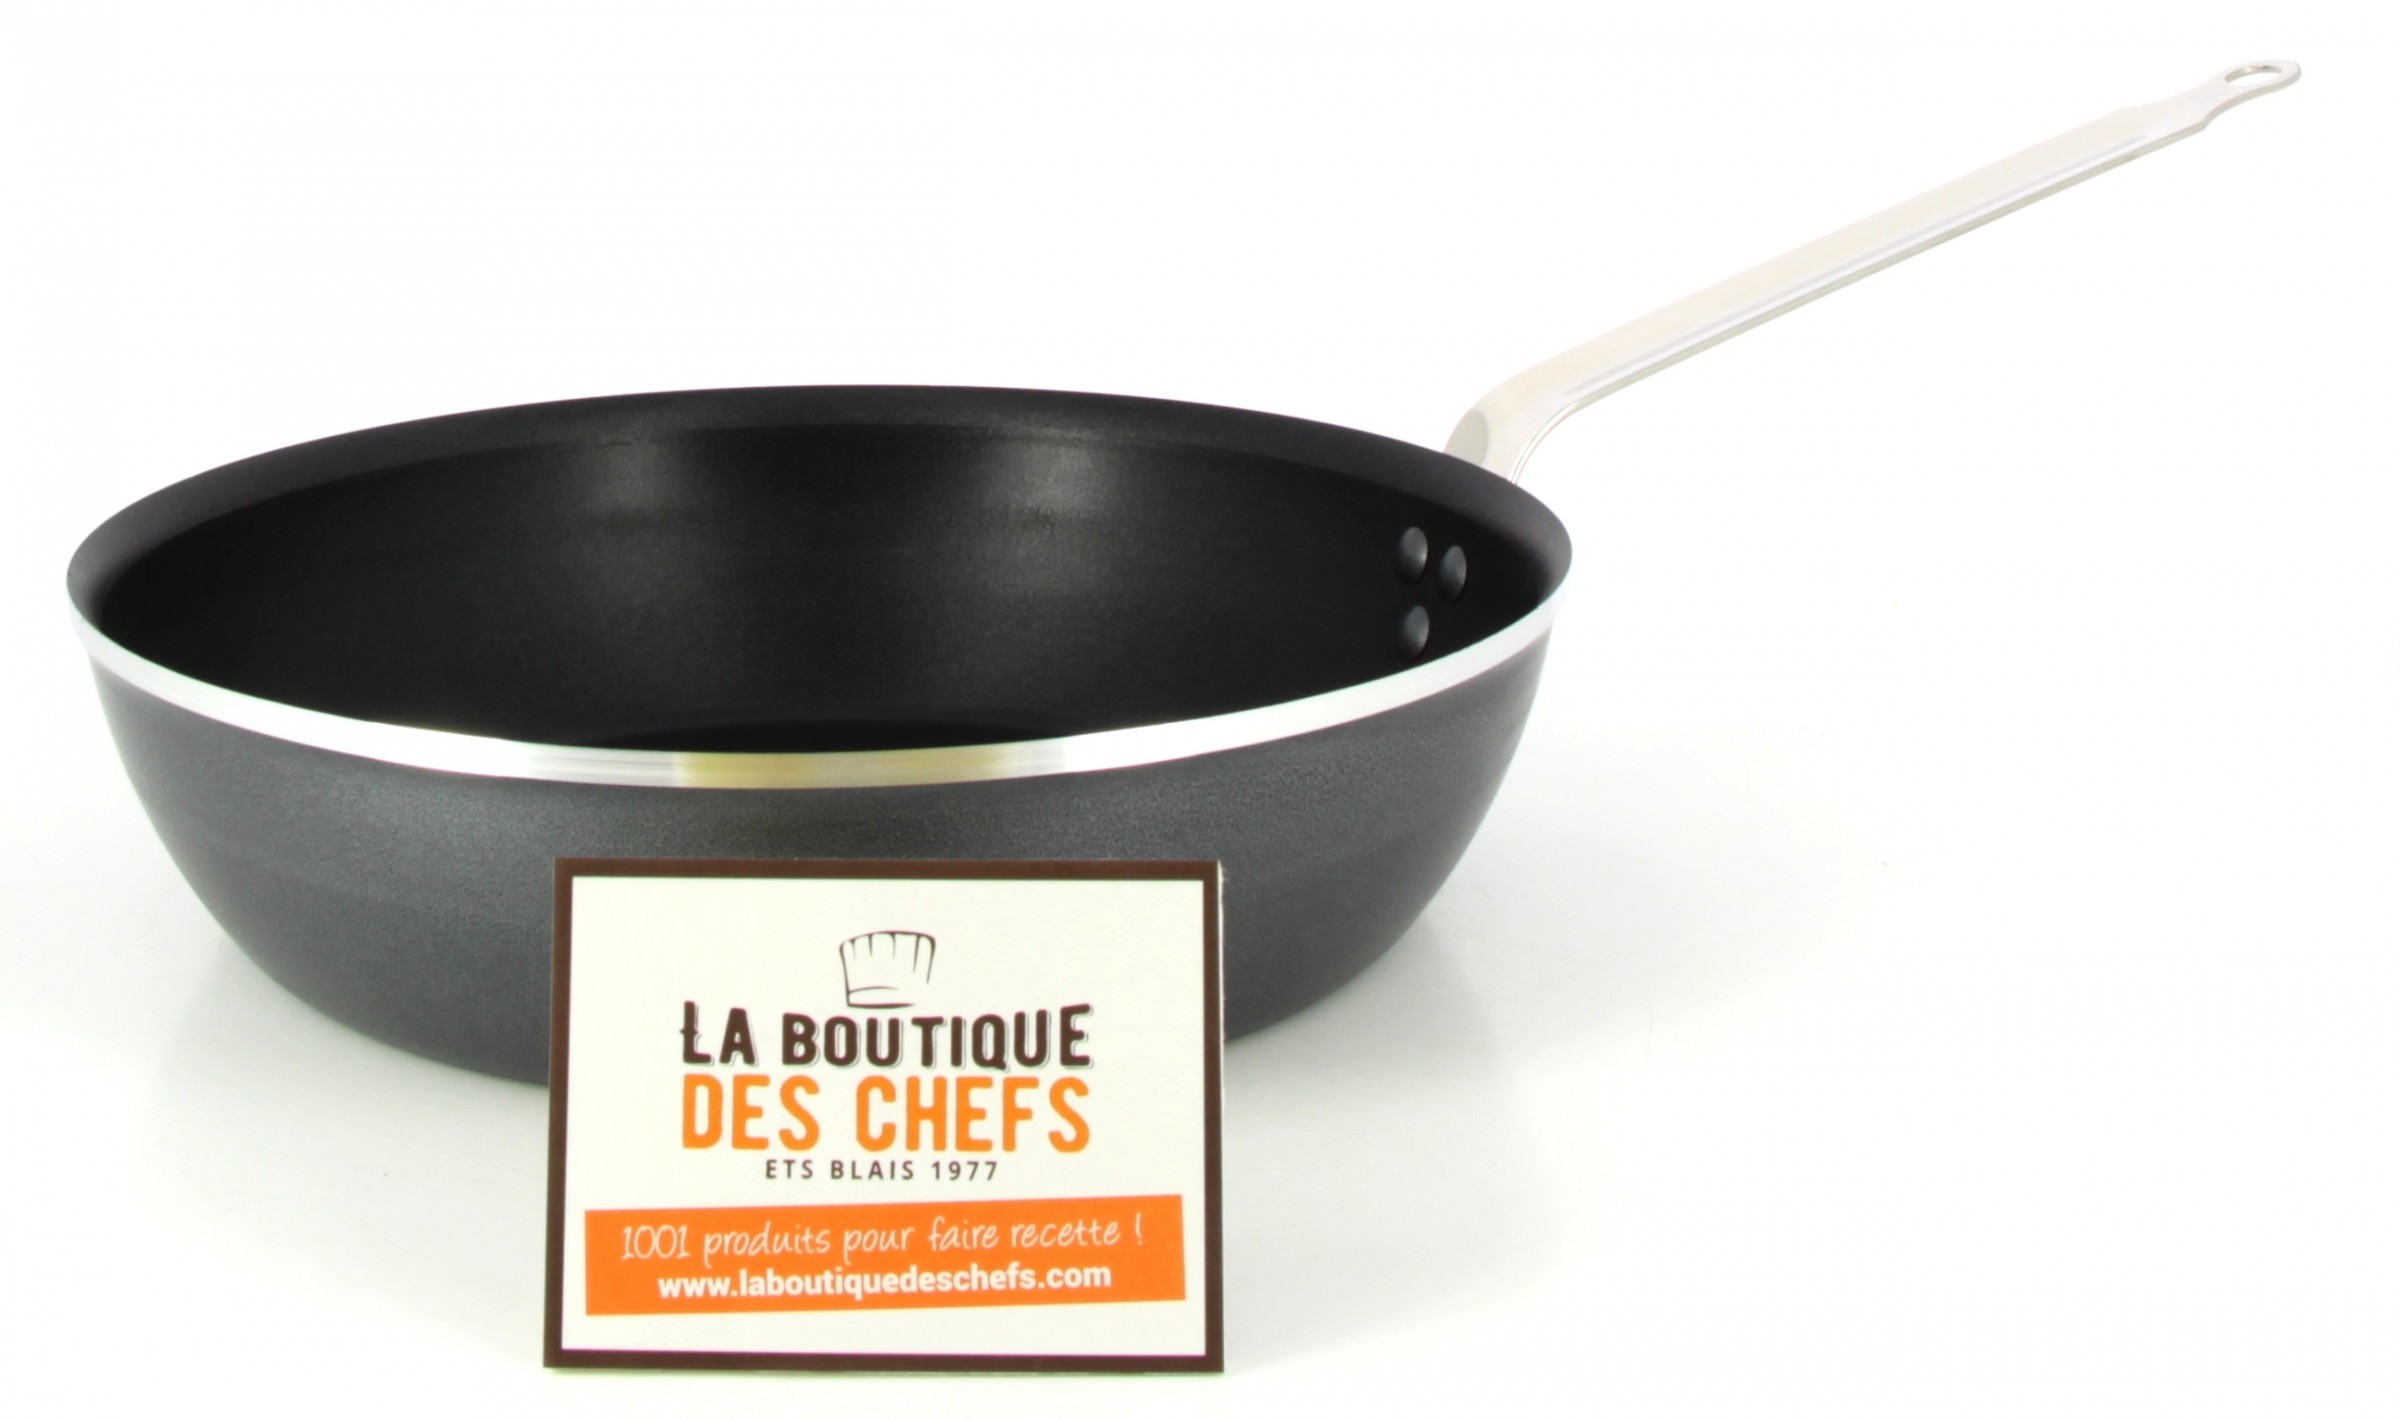 Sauteuse de cuisine anti-adhérente Ø 28 cm Classe Chef - Matfer-Bourgeat